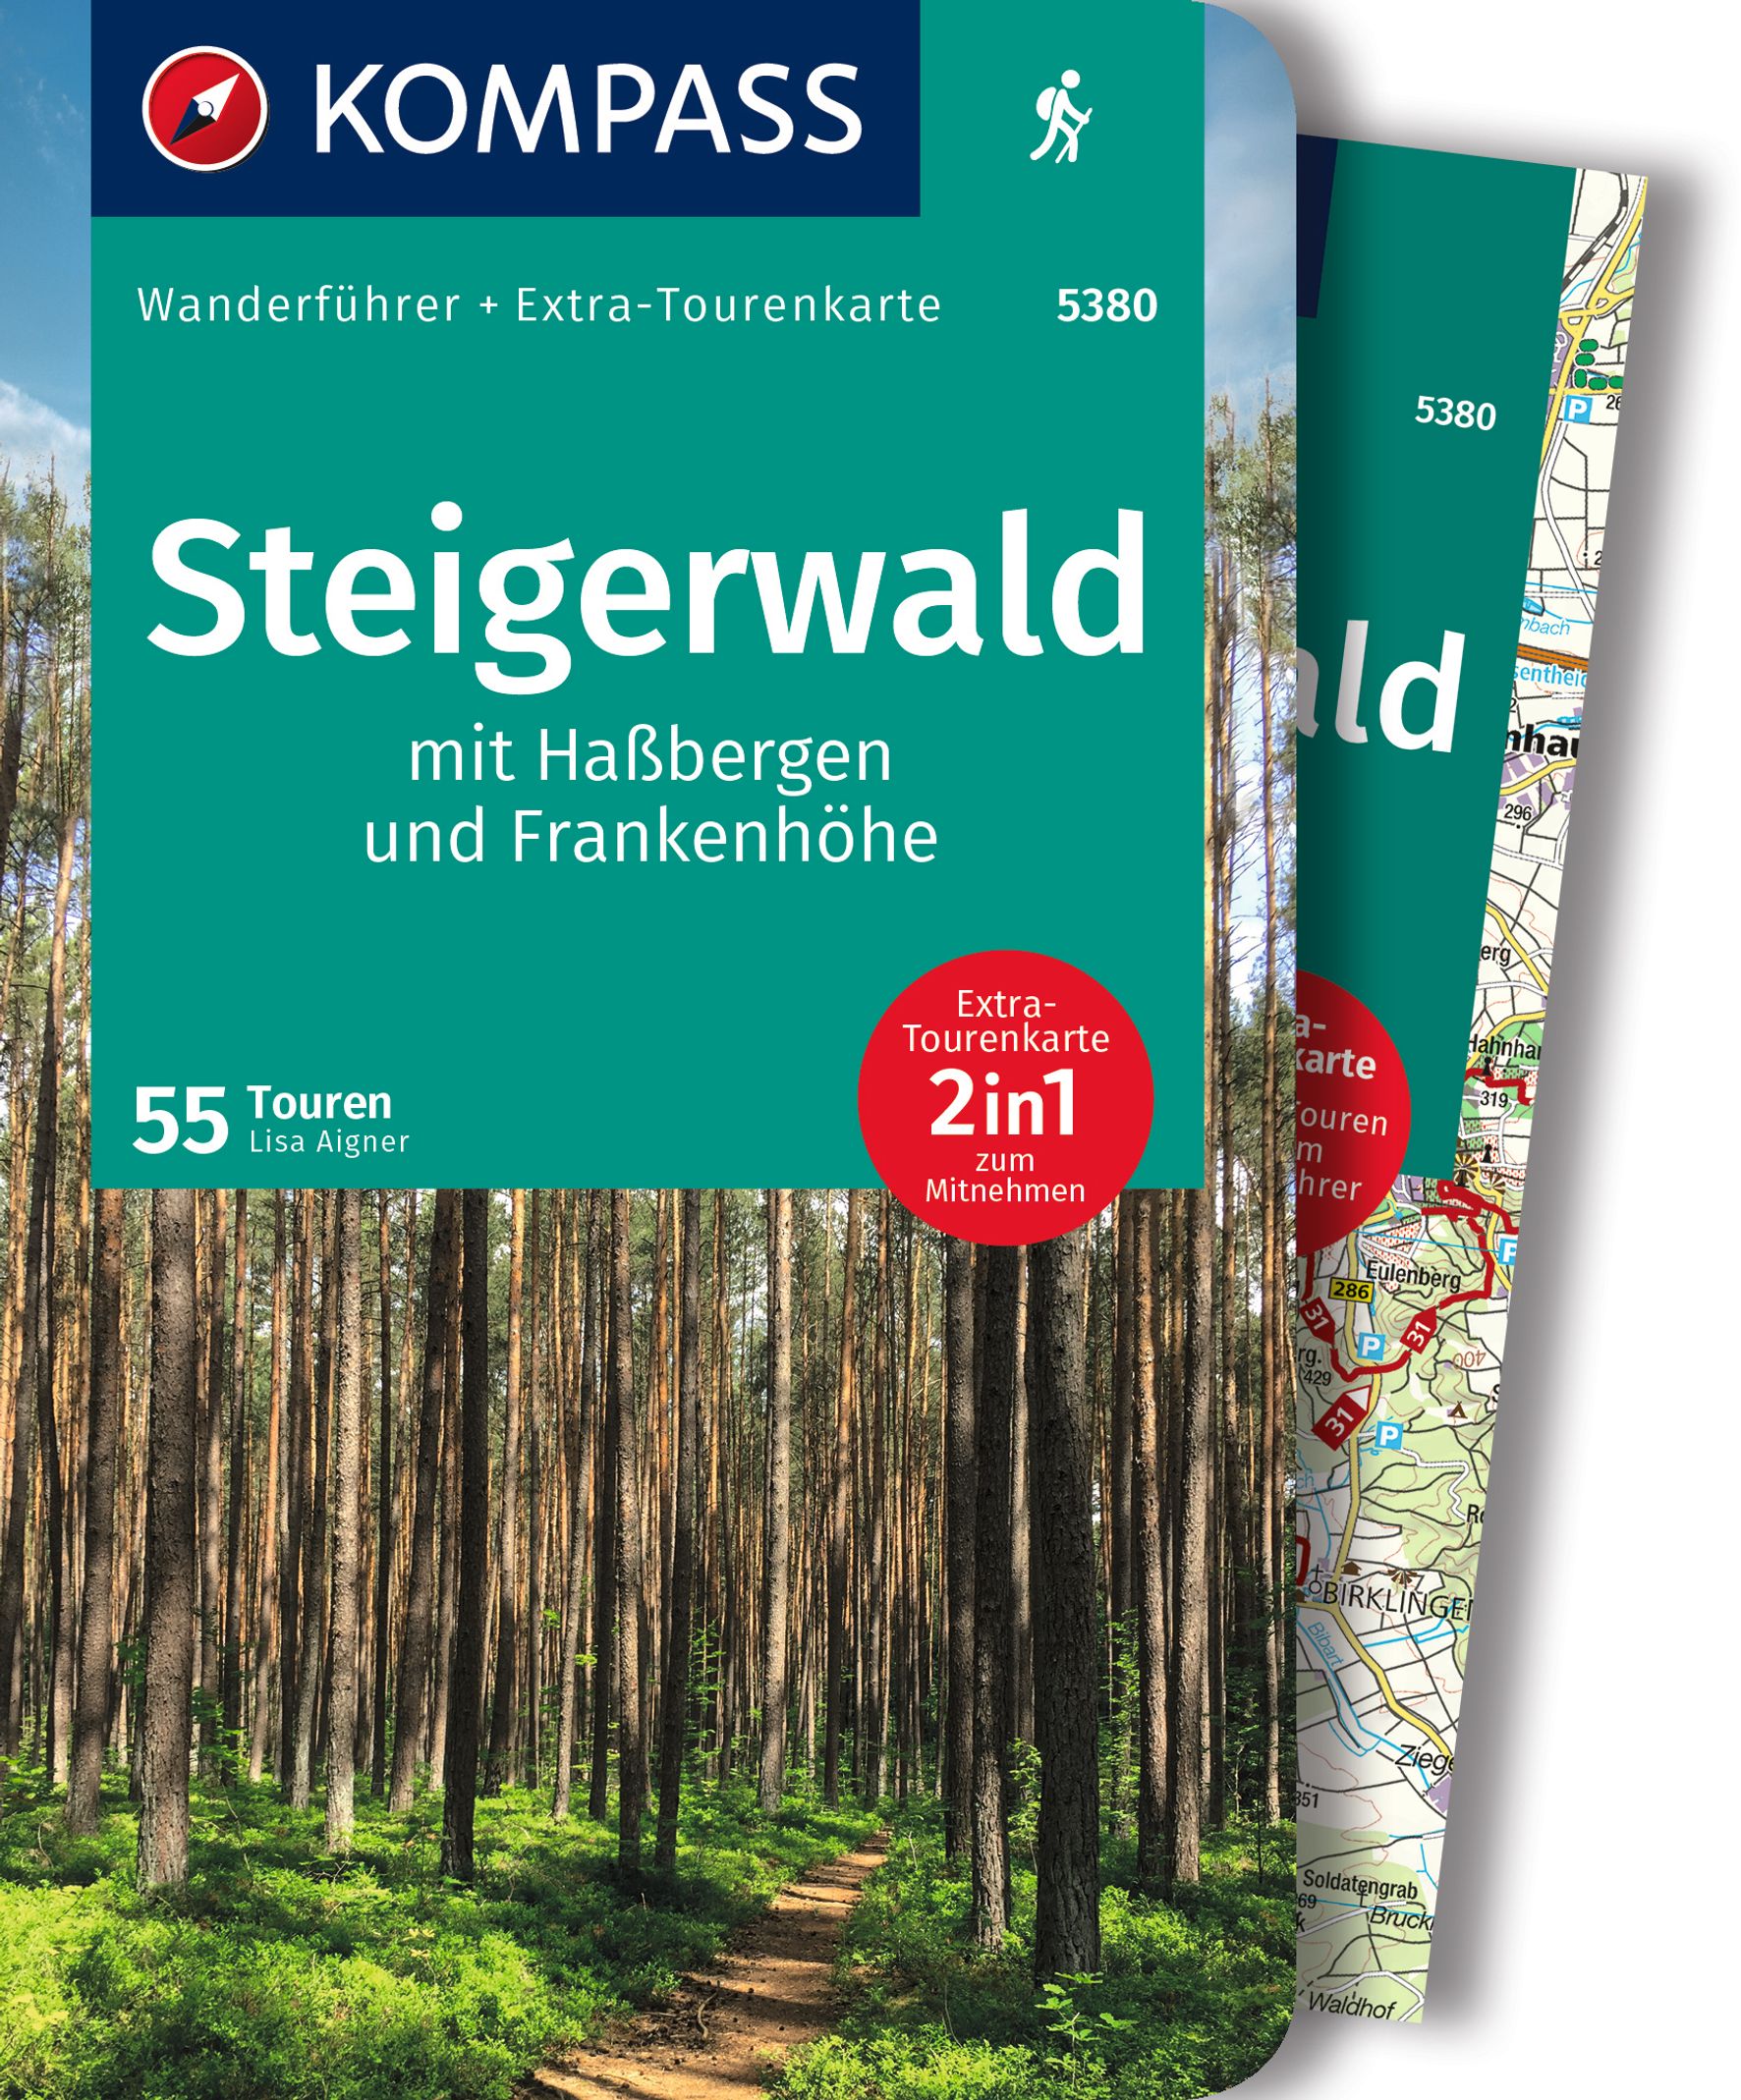 MAIRDUMONT Steigerwald mit Haßbergen und Frankenhöhe, 55 Touren mit Extra-Tourenkarte